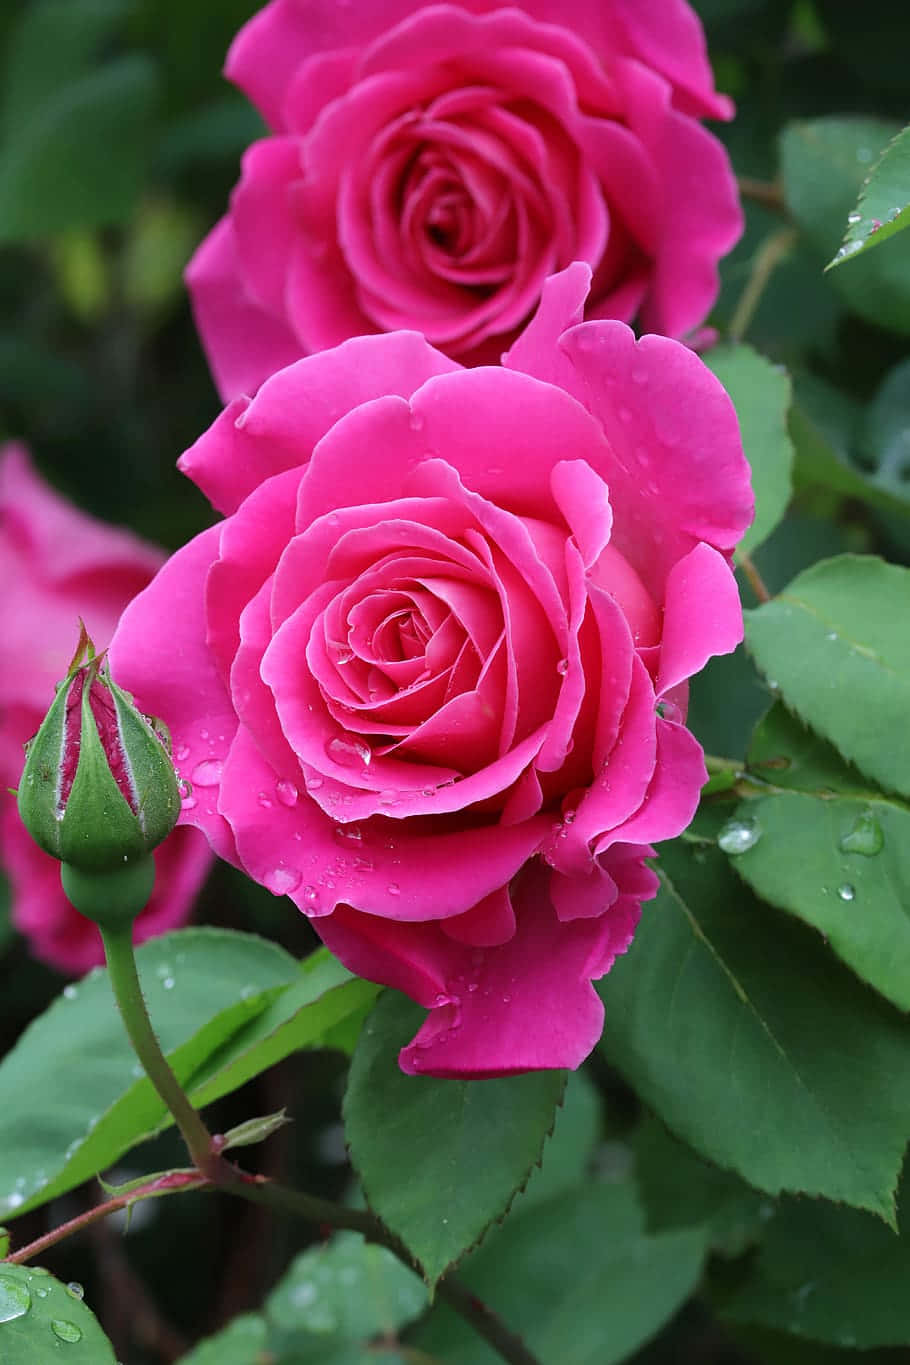 Vackerbild På Fuchsia Färgade Rosor I En Blomträdgård.